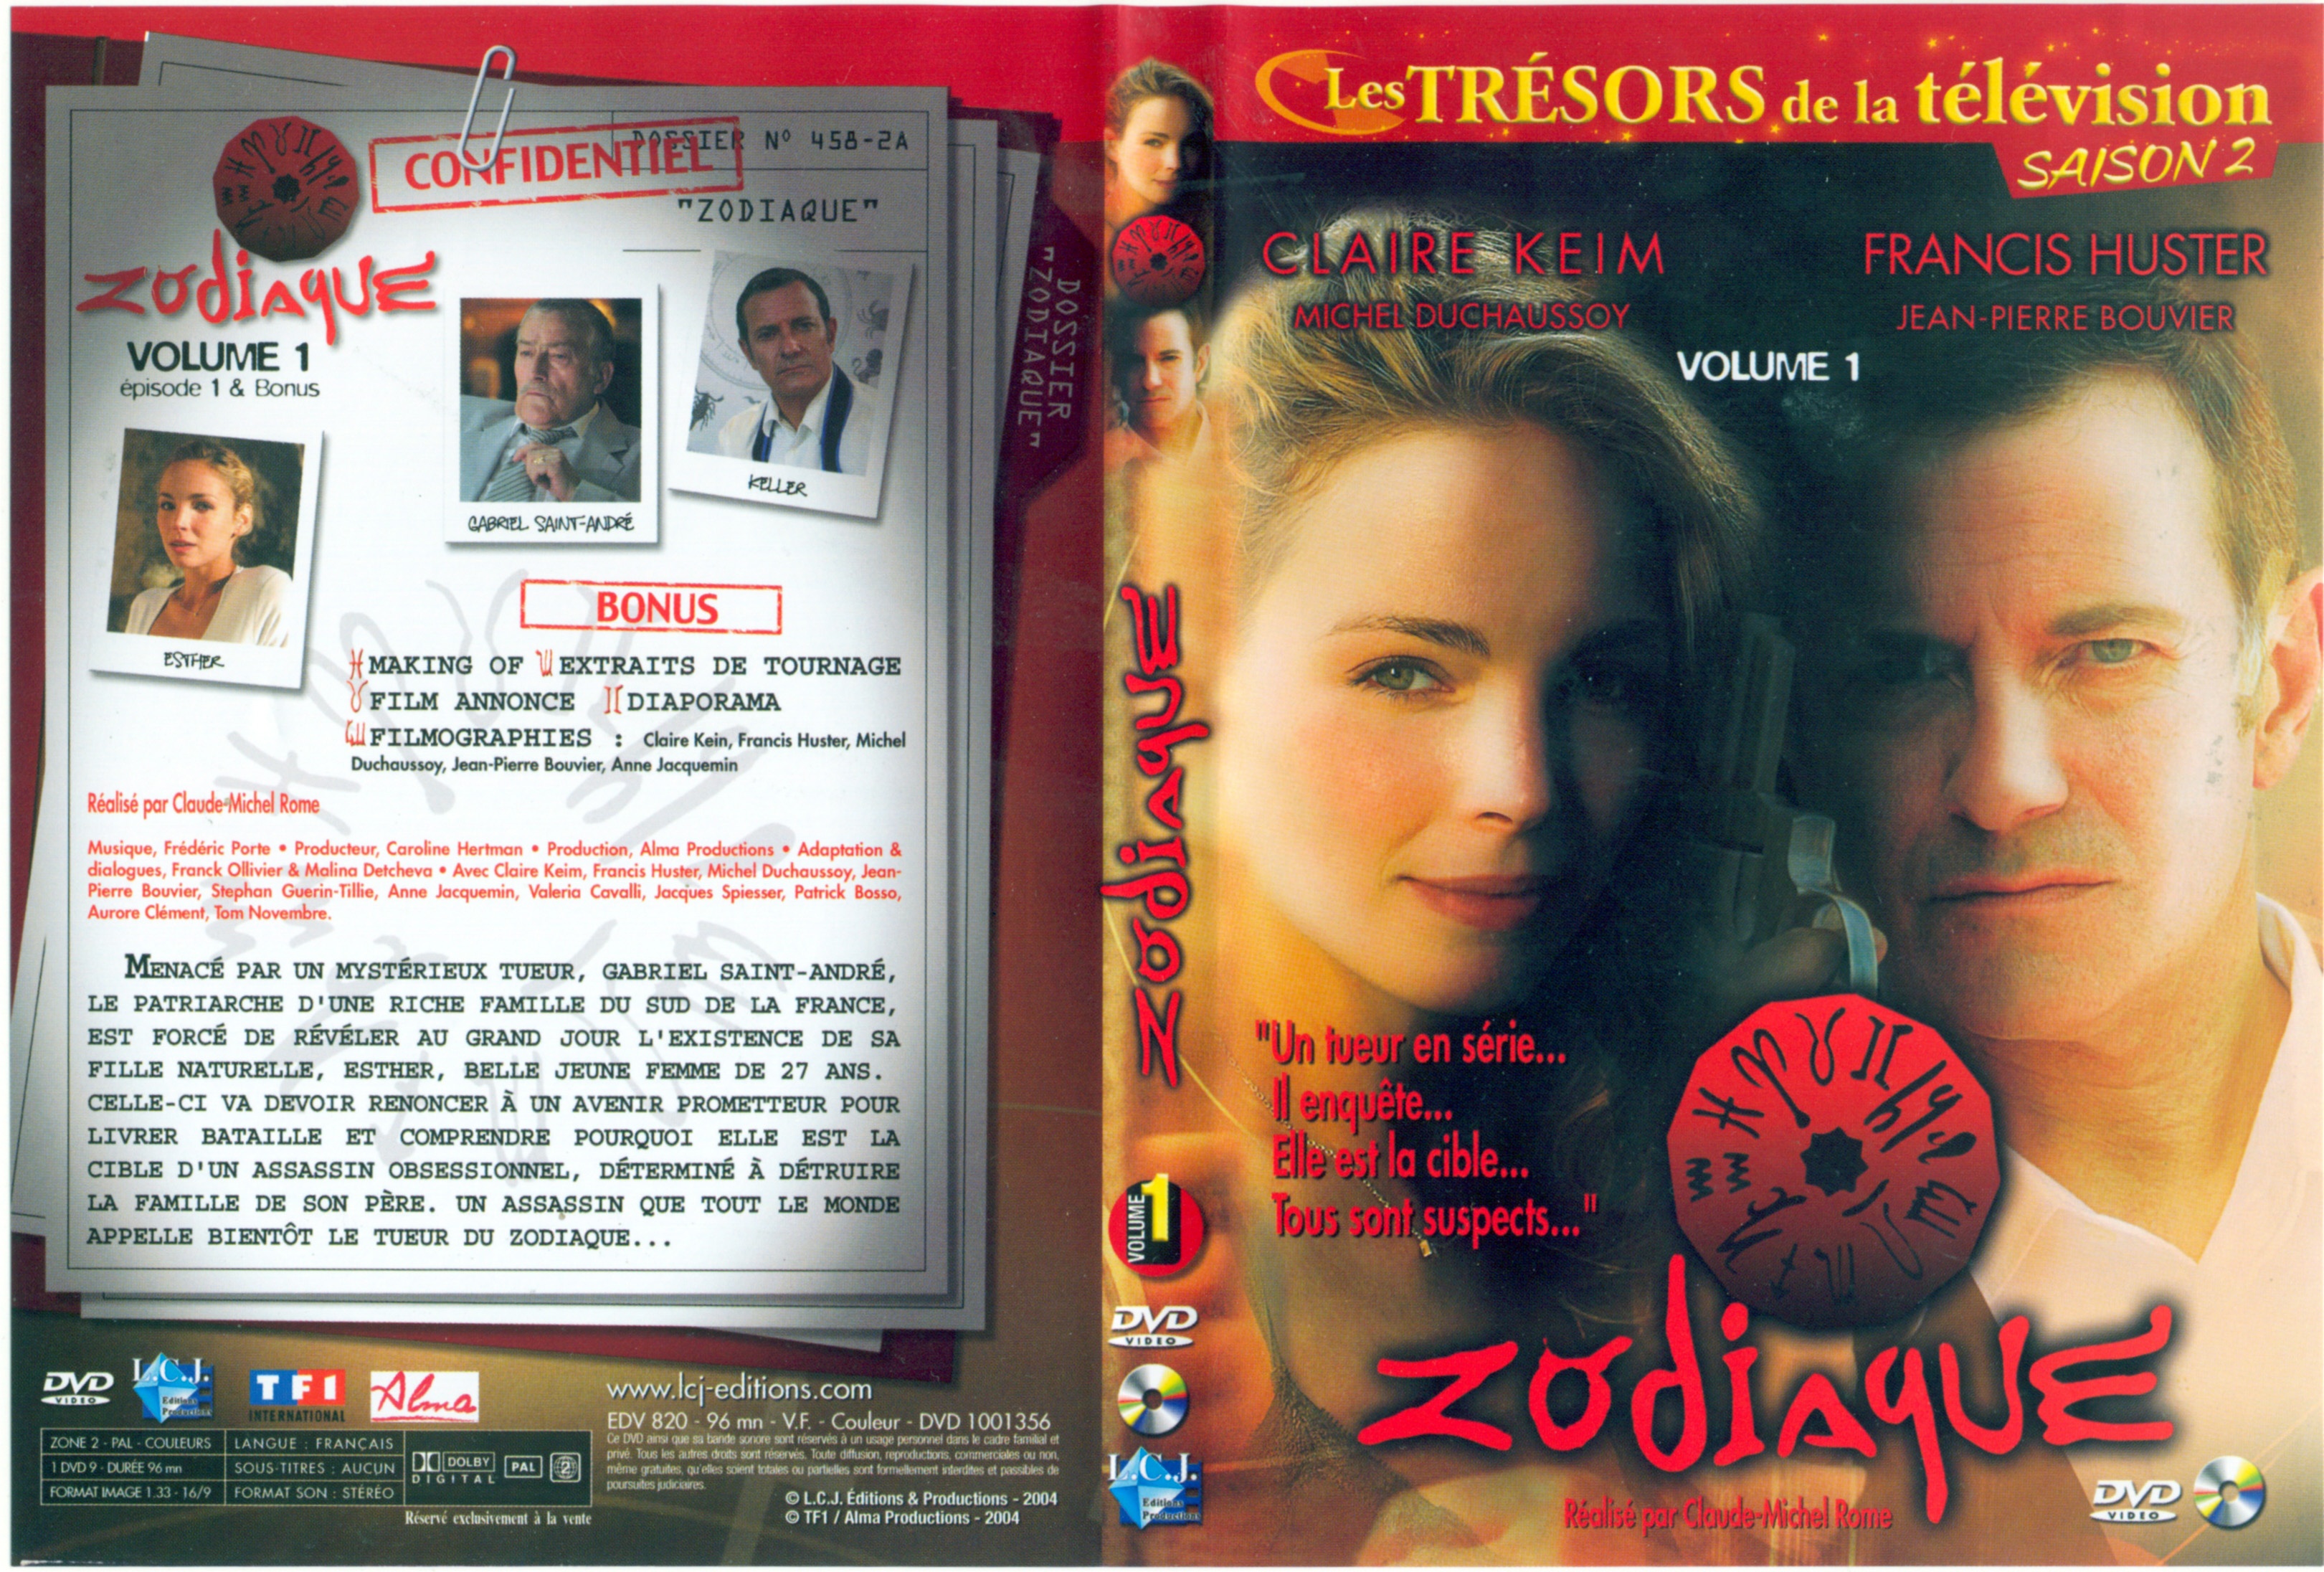 Jaquette DVD Zodiaque vol 1